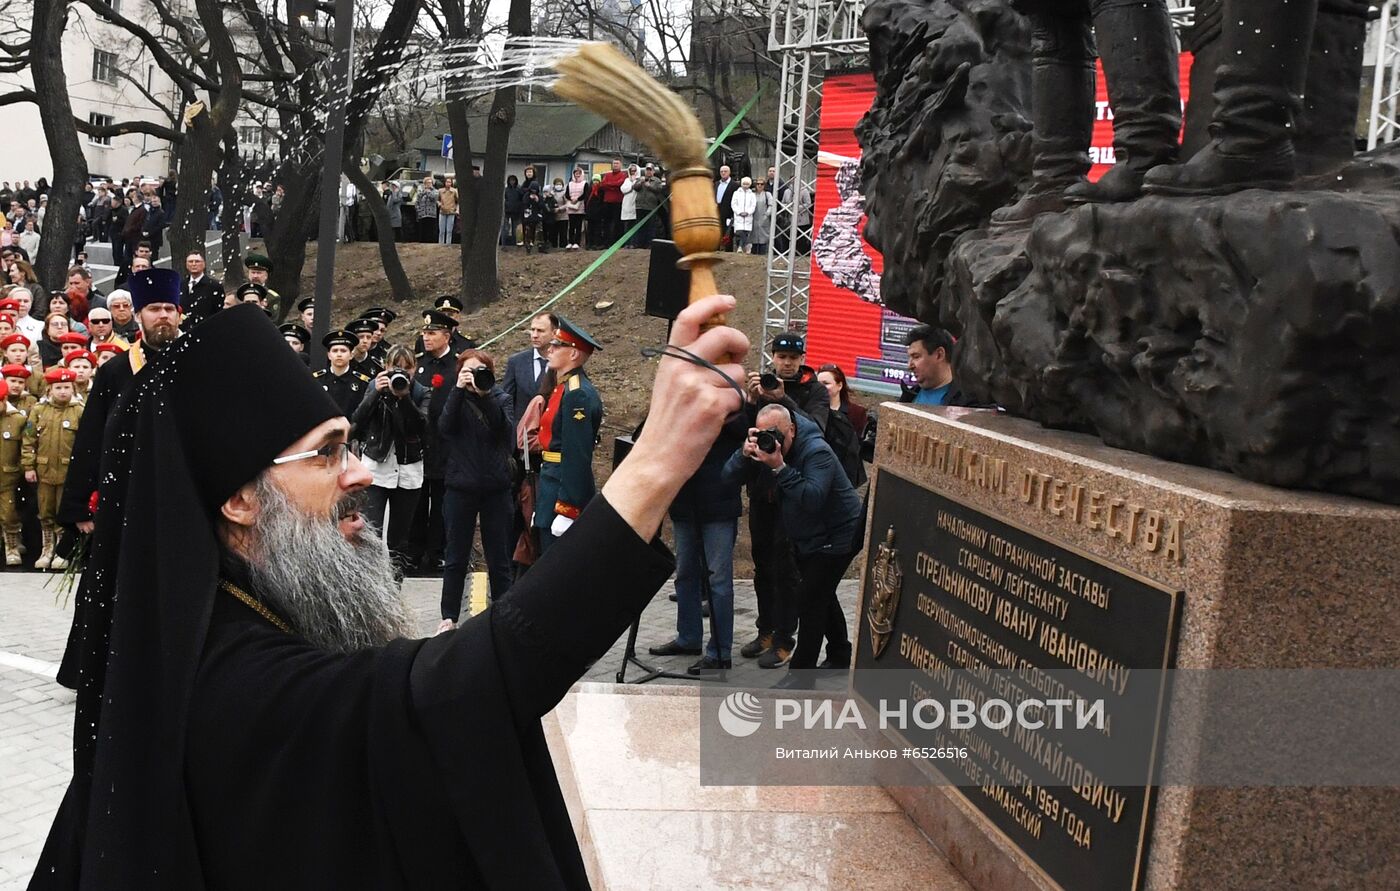 Открытие памятника пограничникам, погибшим во время конфликта на о. Даманский в 1969 г.